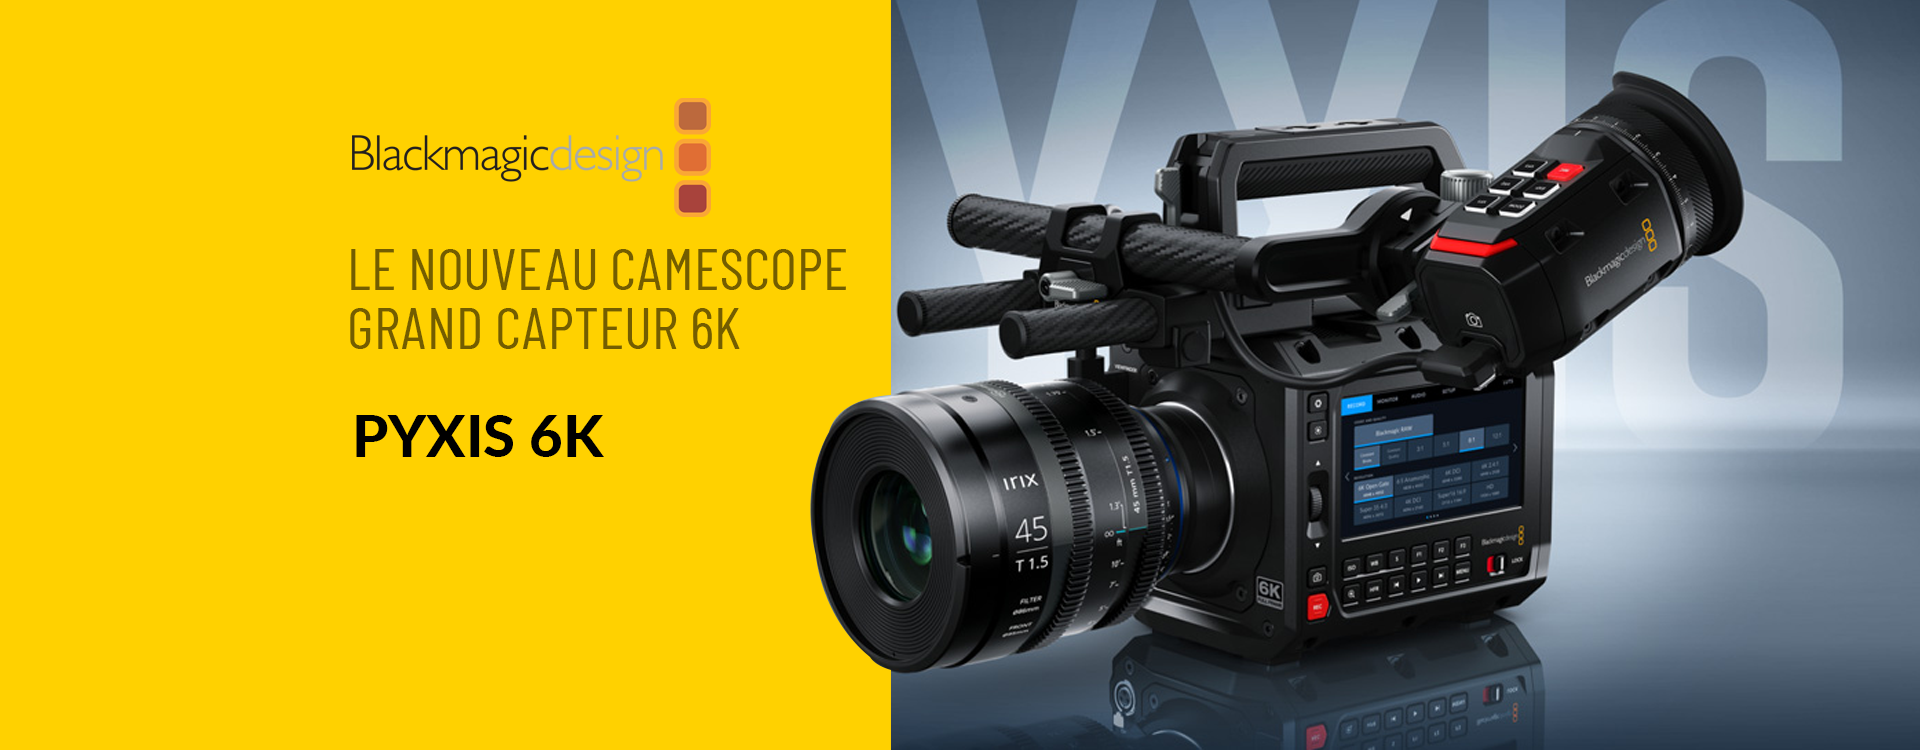 Blackmagic Design annonce la sortie de la nouvelle Blackmagic PYXIS 6K